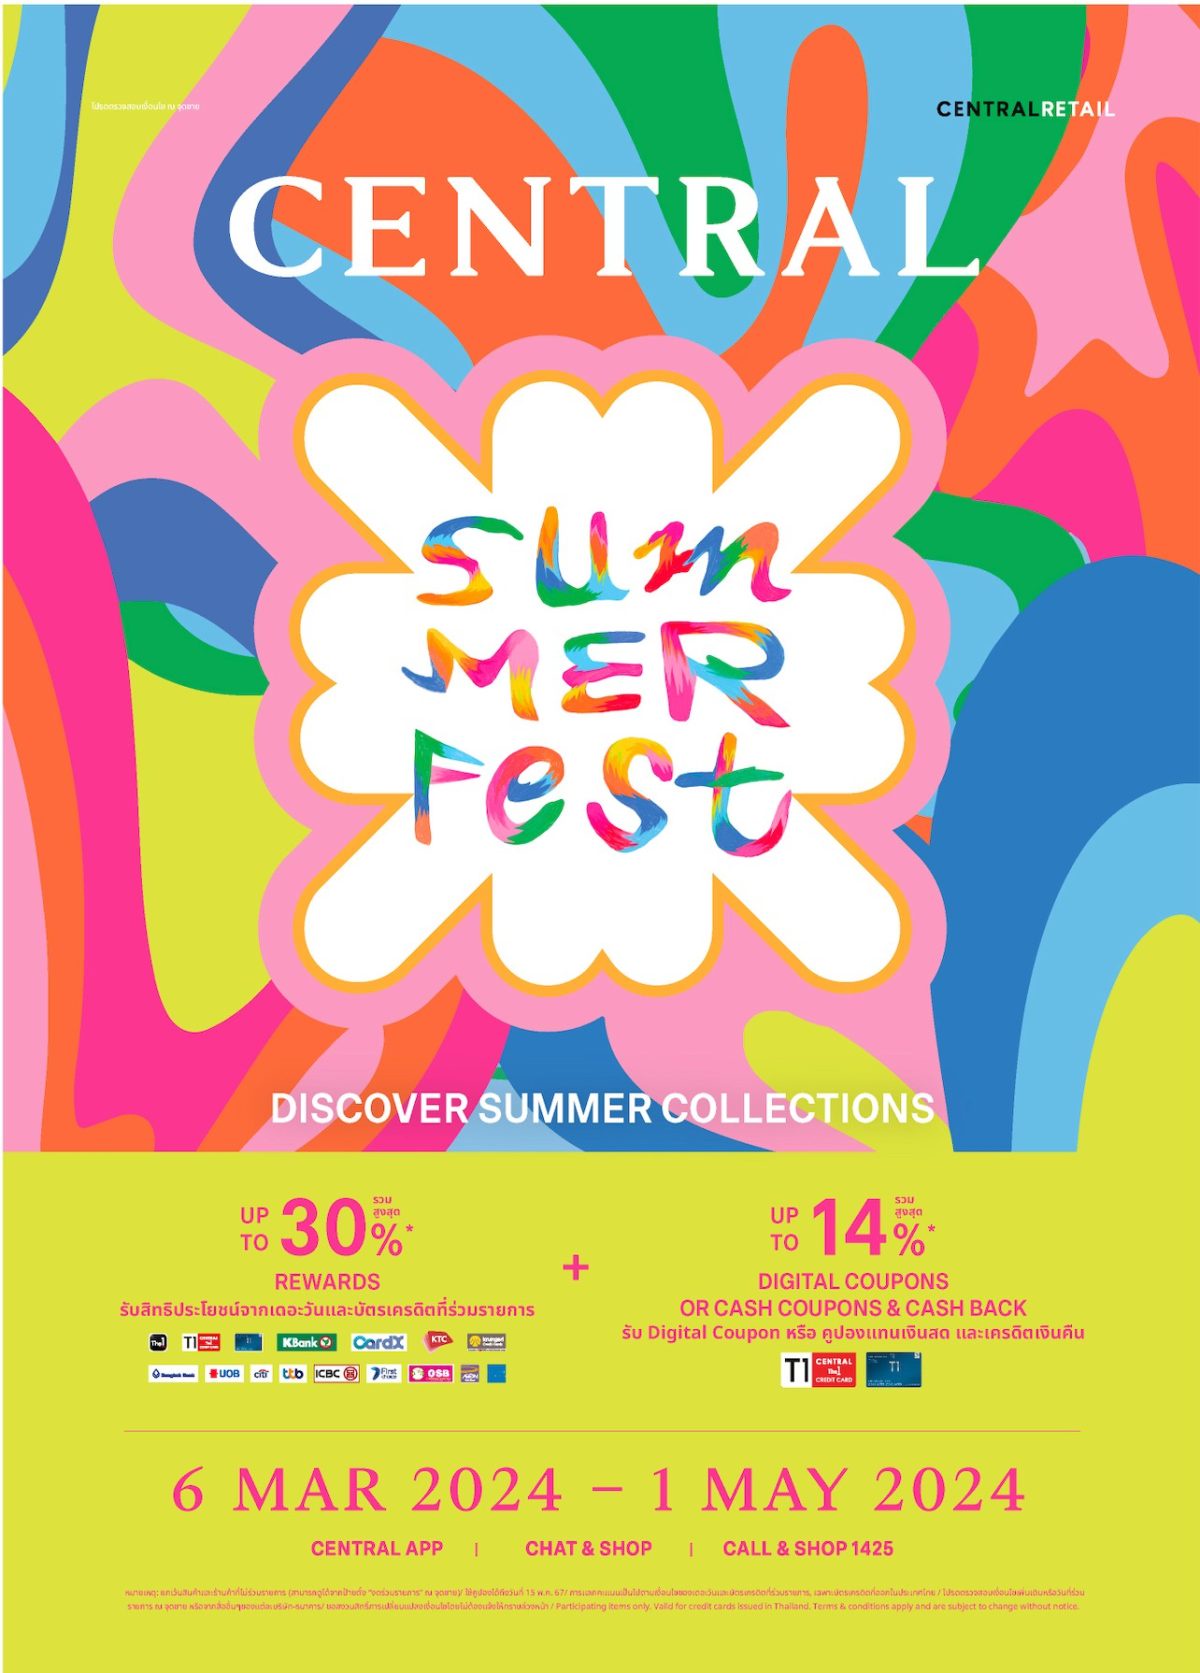 ห้างเซ็นทรัล รีเทลเลอร์เบอร์ 1 แห่งแฟชั่นเดสทิเนชั่นของเมืองไทย ประกาศลุยศึกซัมเมอร์ จัด Central Summer Fest